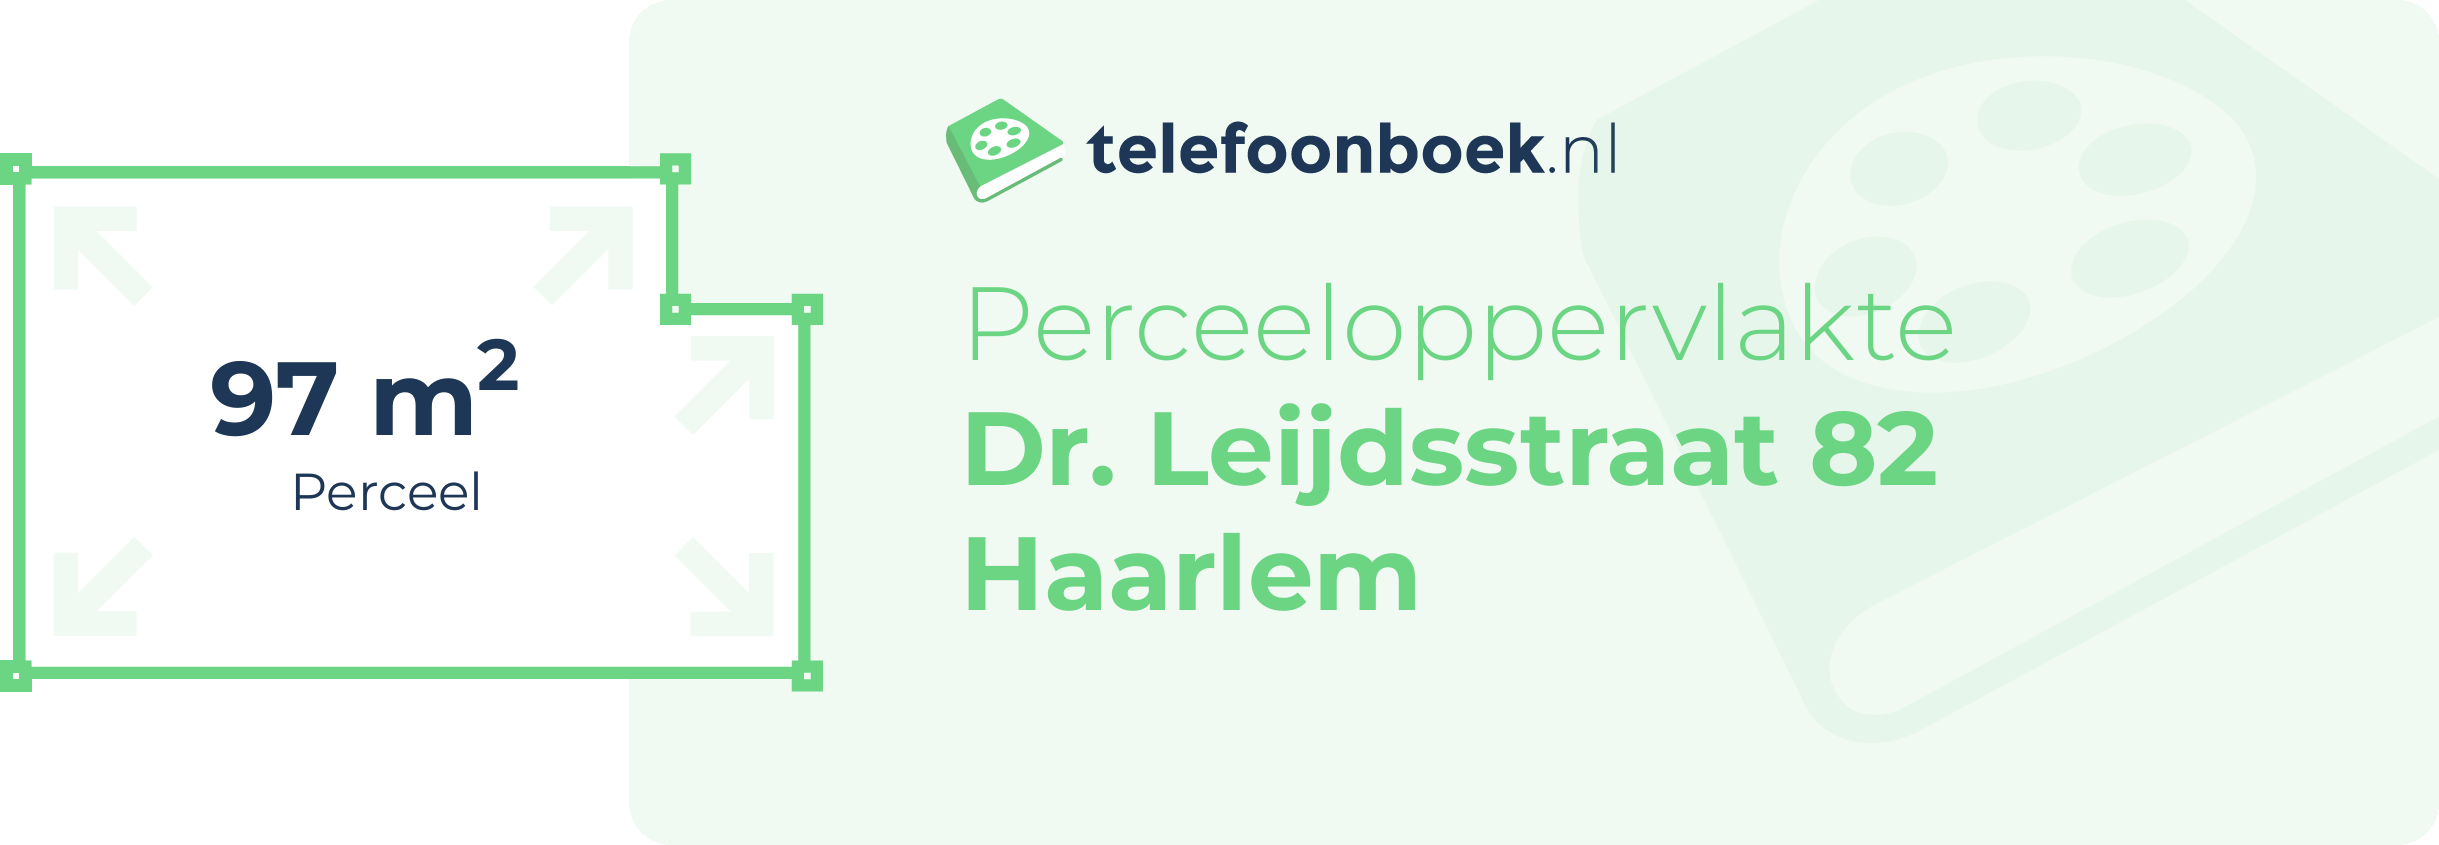 Perceeloppervlakte Dr. Leijdsstraat 82 Haarlem